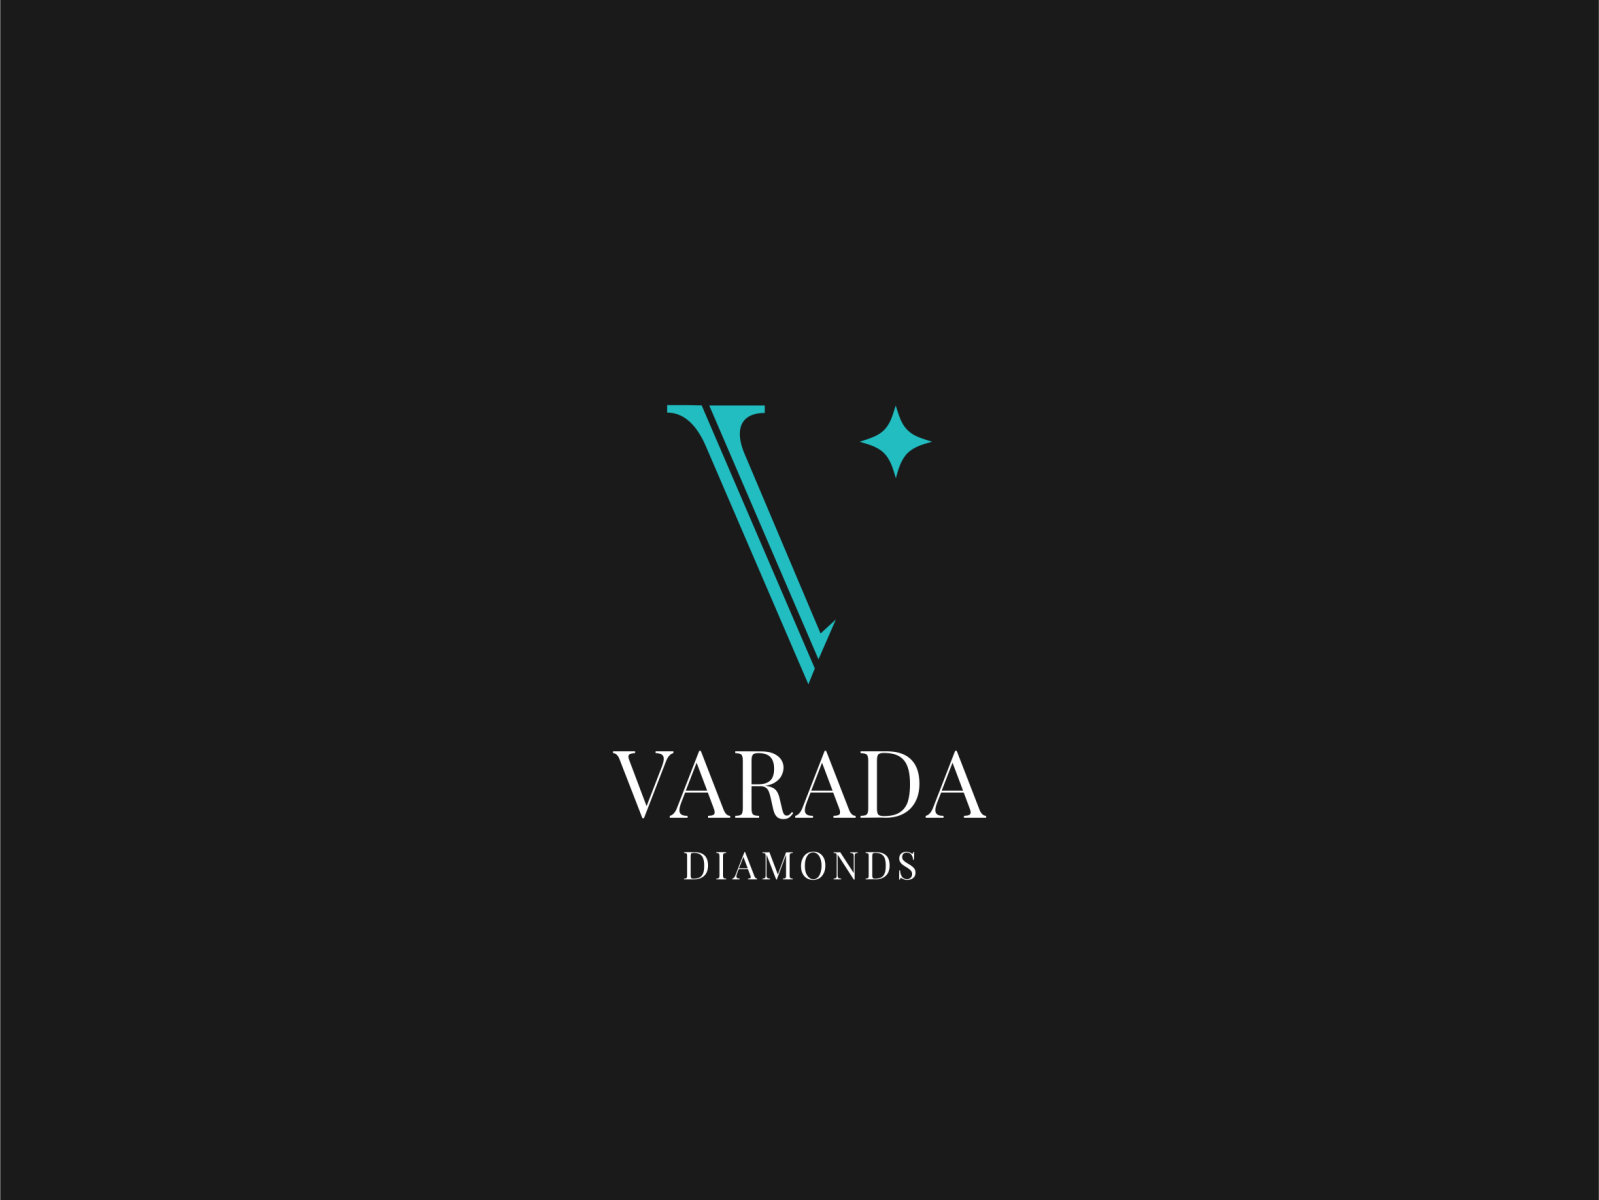 Varada Diamonds by Ajay Ramachandran on Dribbble